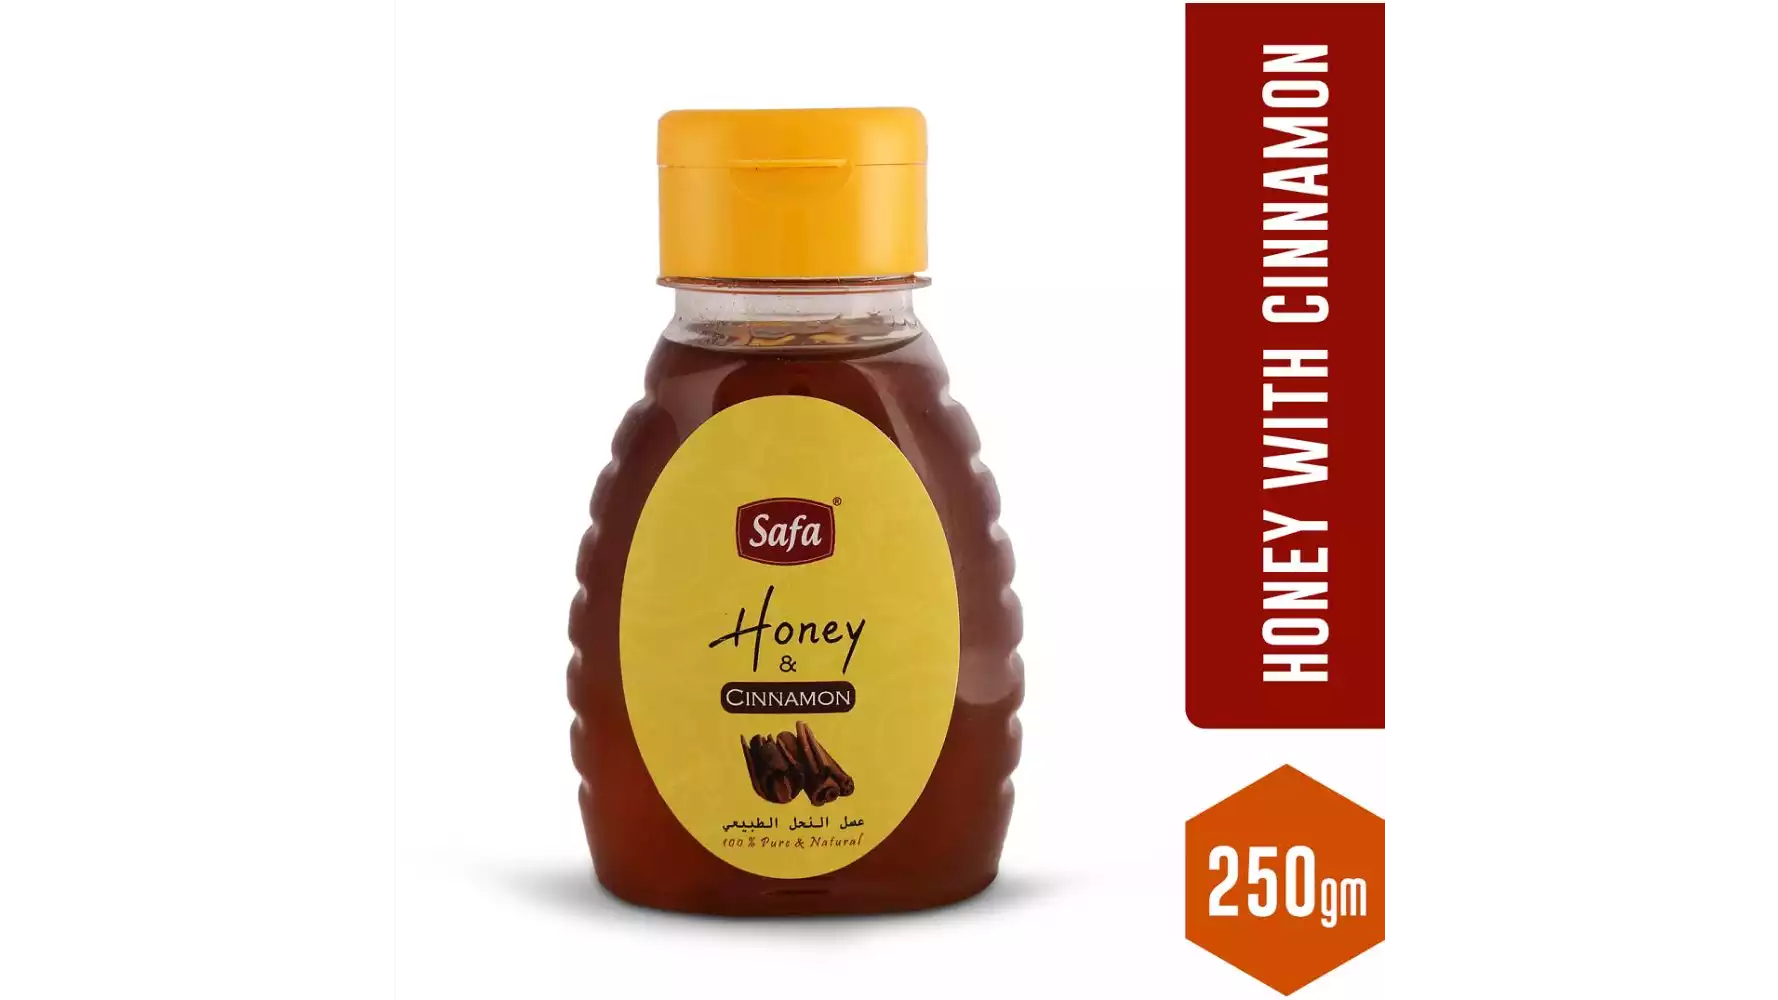 Safa Honey & Ginger (250g)